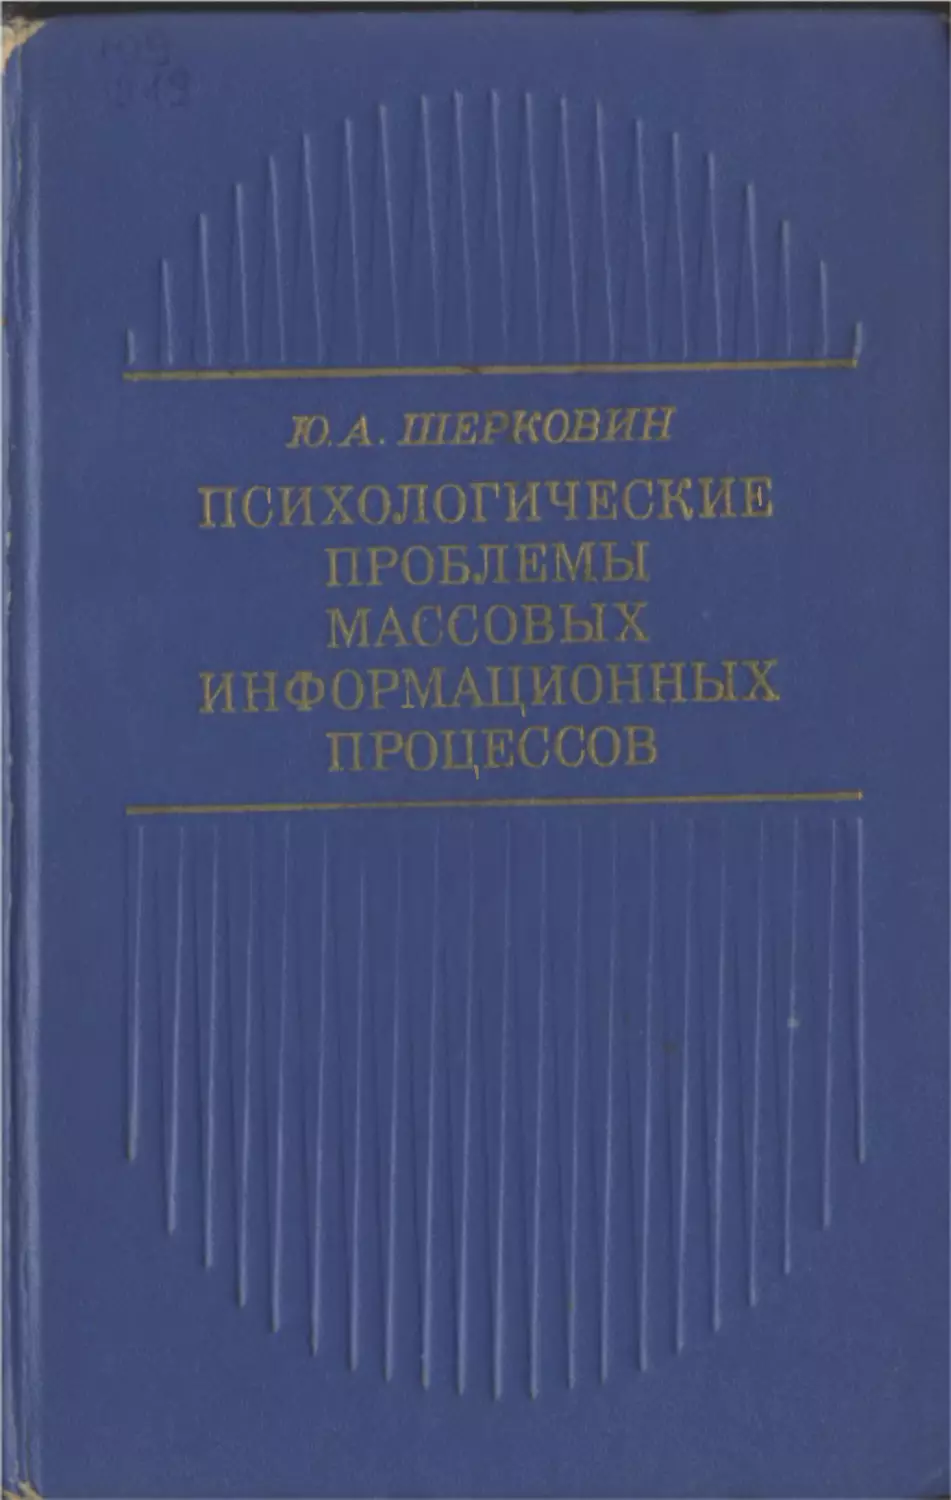 Шерковин Ю. А. Психологические проблемы массовых информационных процессов. М., «Мысль», 1973. 215 с